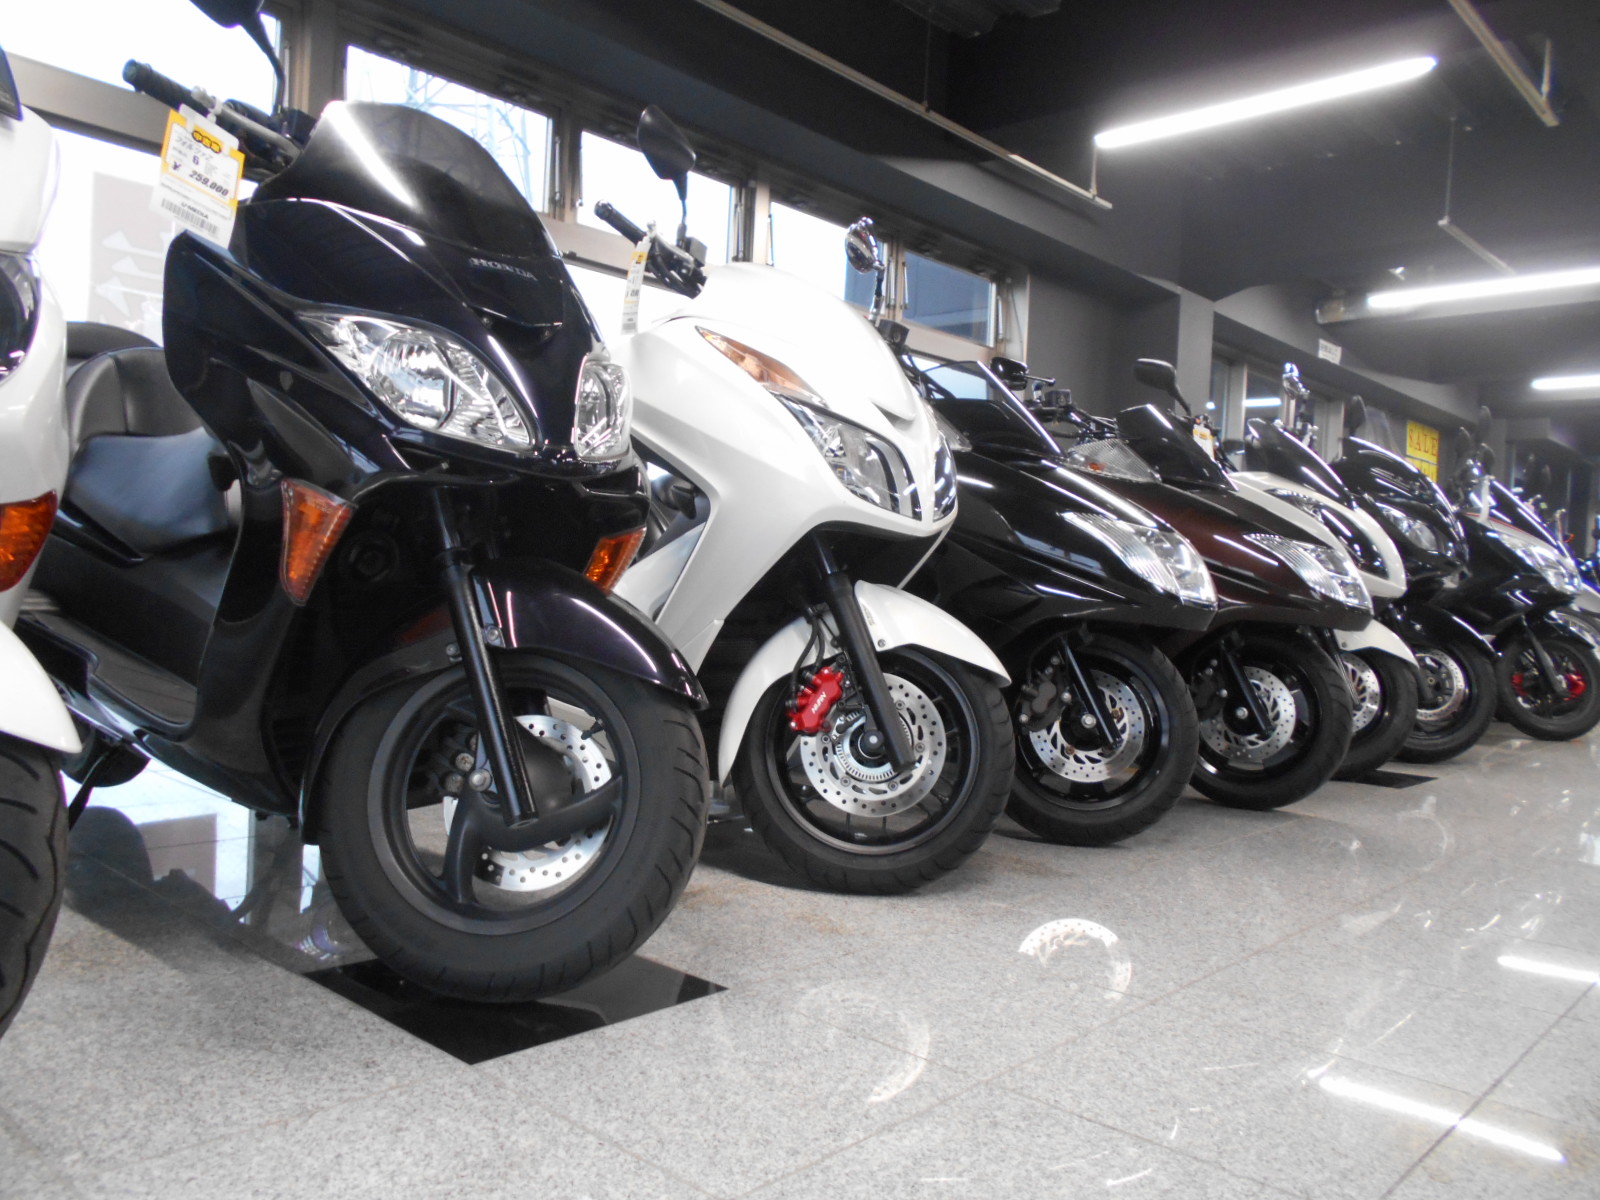 旧型250ccビッグスクーター揃っています 中古車 最新情報 U Media ユーメディア 中古バイク 新車バイク探しの決定版 神奈川 東京でバイク探すならユーメディア